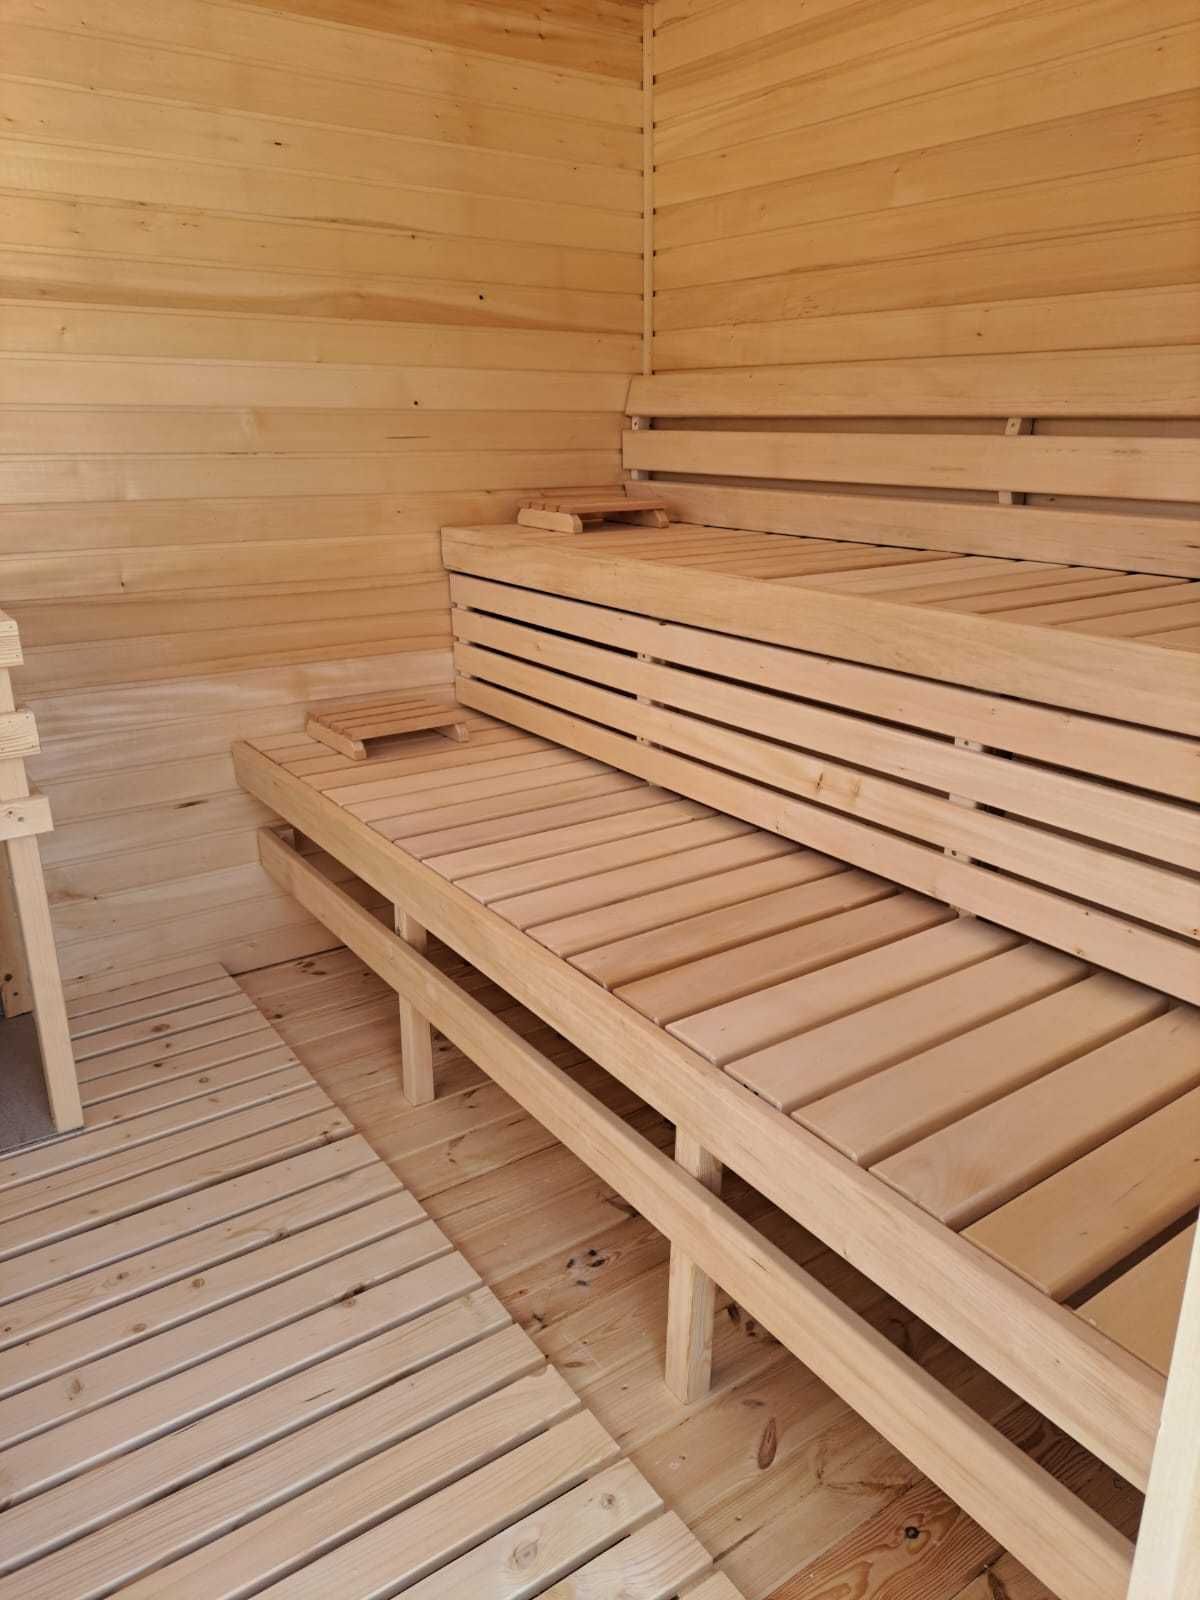 Sauna Ogrodowa Prestige Wyposażona Harvia Fińska Sauny do Twojego Domu